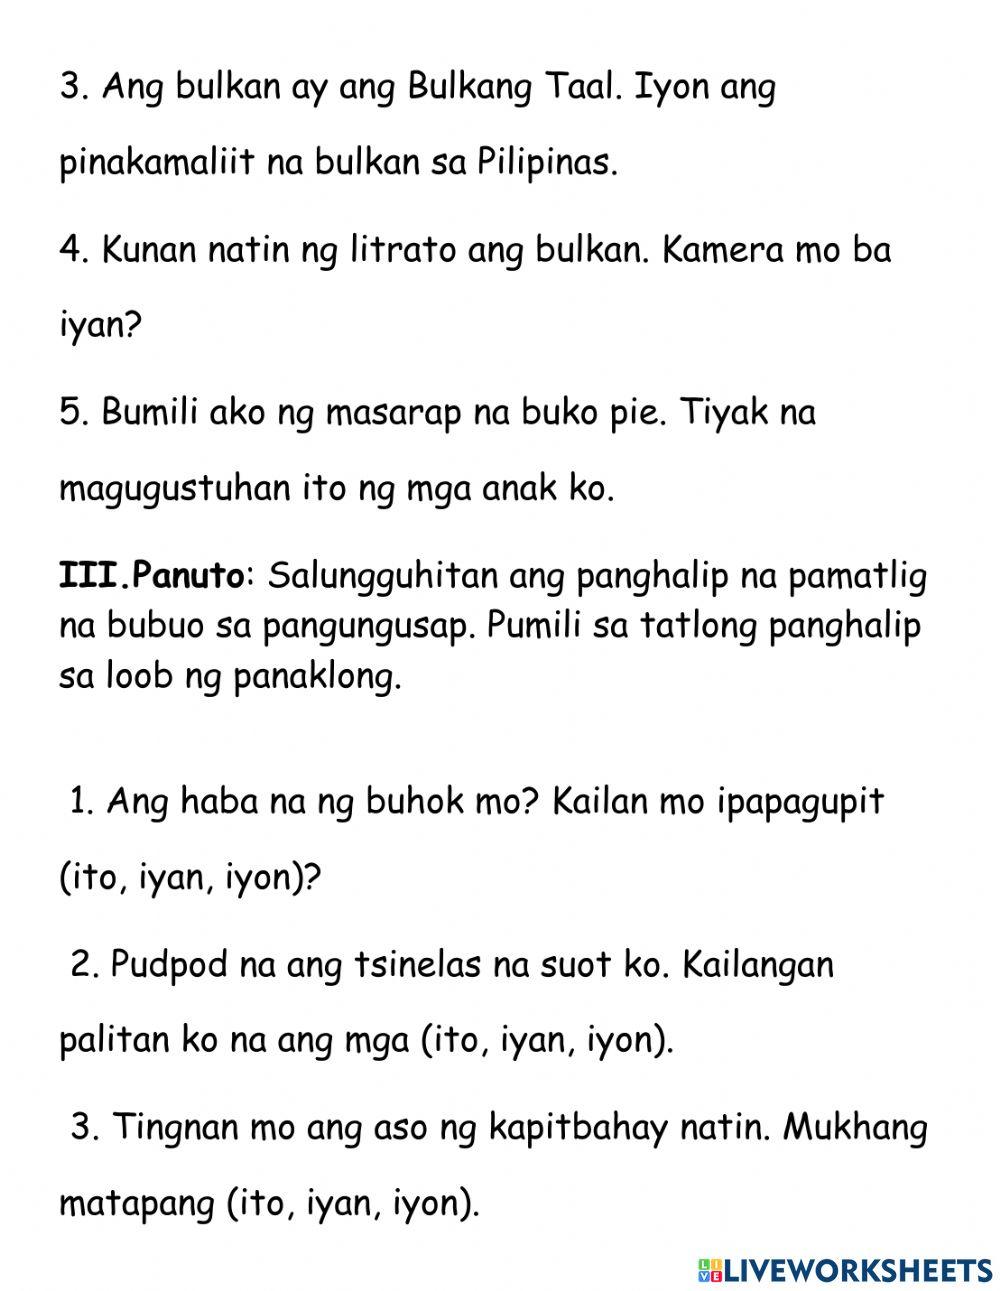 Pagsasanay sa Filipino 1